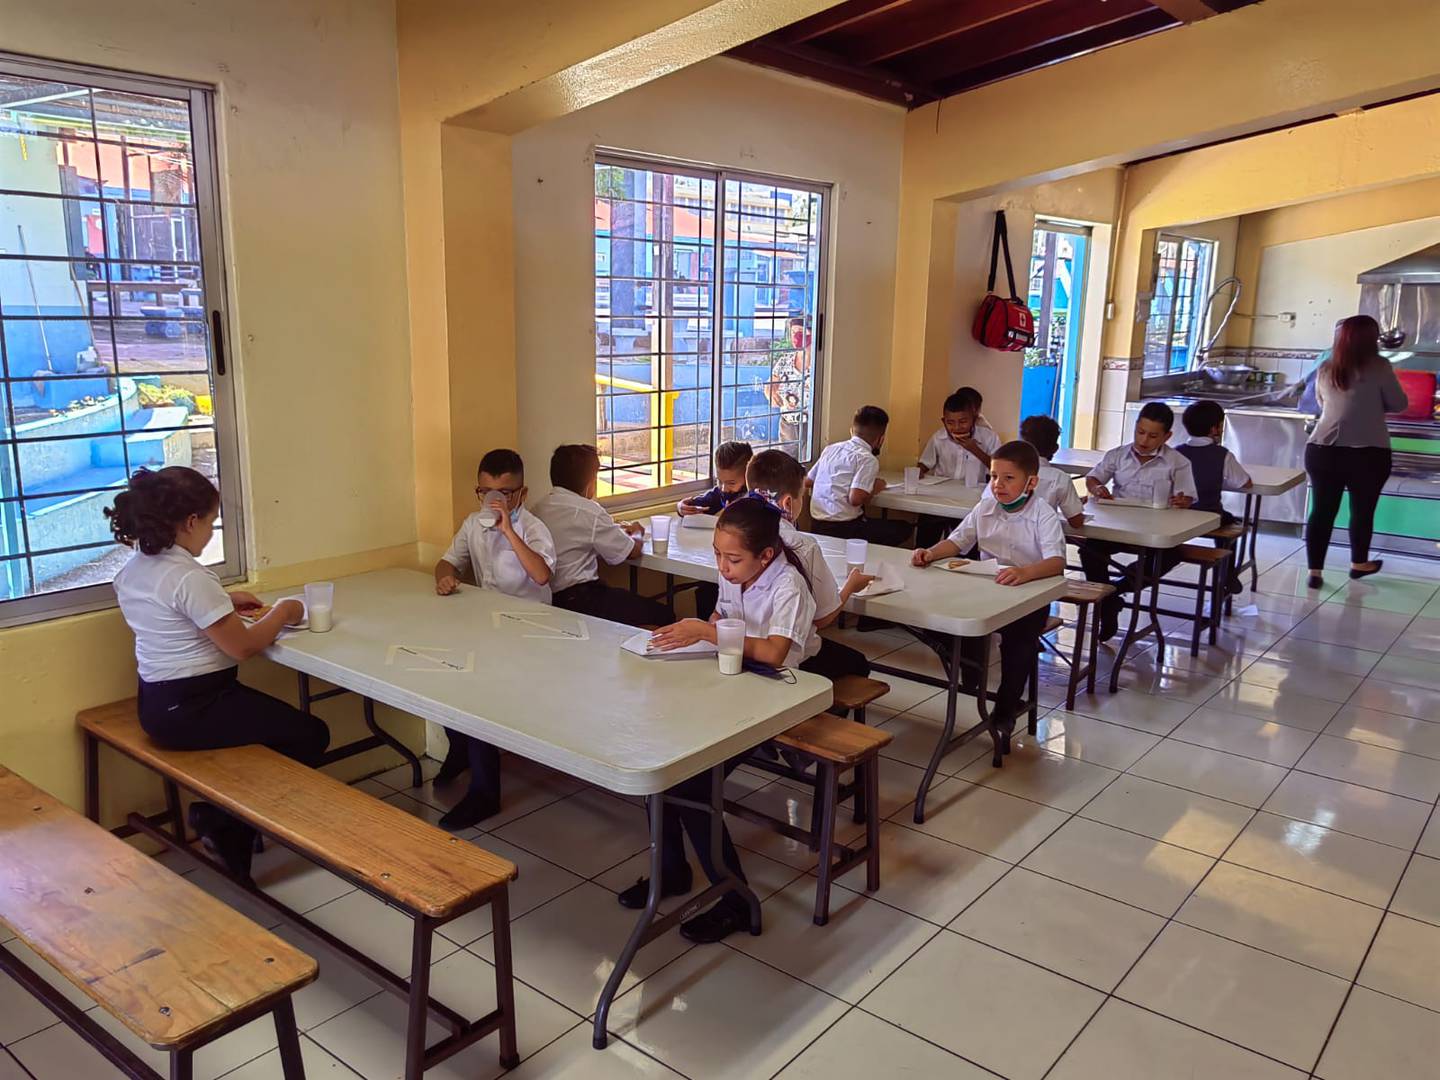 El lunes 22 de febrero del 2022, en la Escuela Naciones Unidas del barrio del mismo nombre en San José, el comedor escolar funcionaba puras tejas para una población de 468 estudiantes.